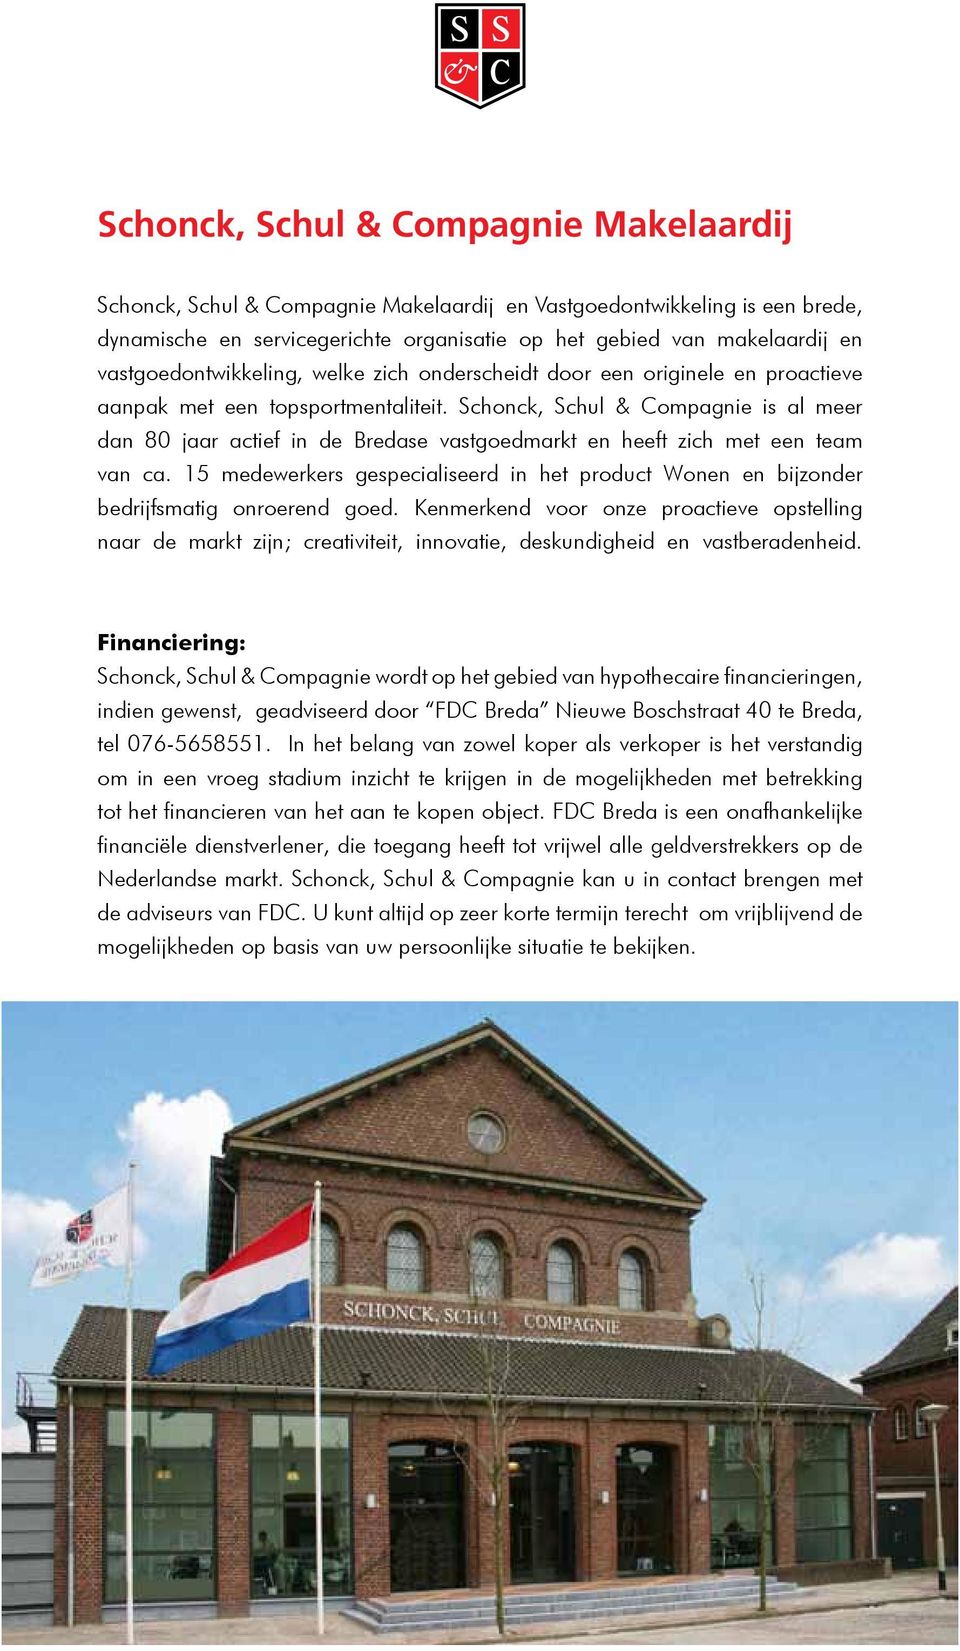 Schonck, Schul & Compagnie is al meer dan 80 jaar actief in de Bredase vastgoedmarkt en heeft zich met een team van ca.